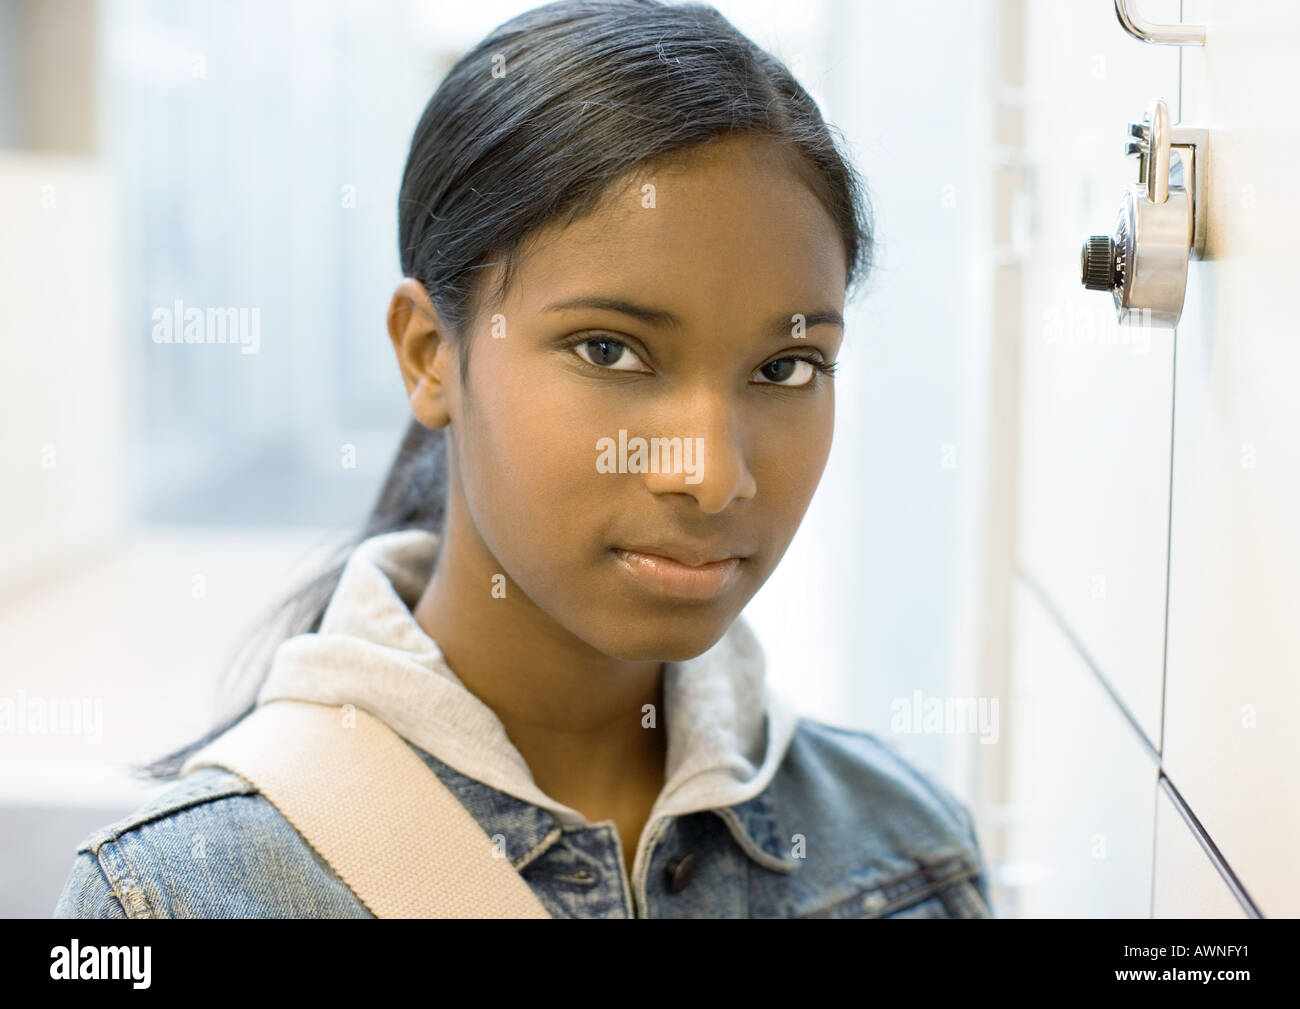 Teen girl standing next to locker Stock Photo